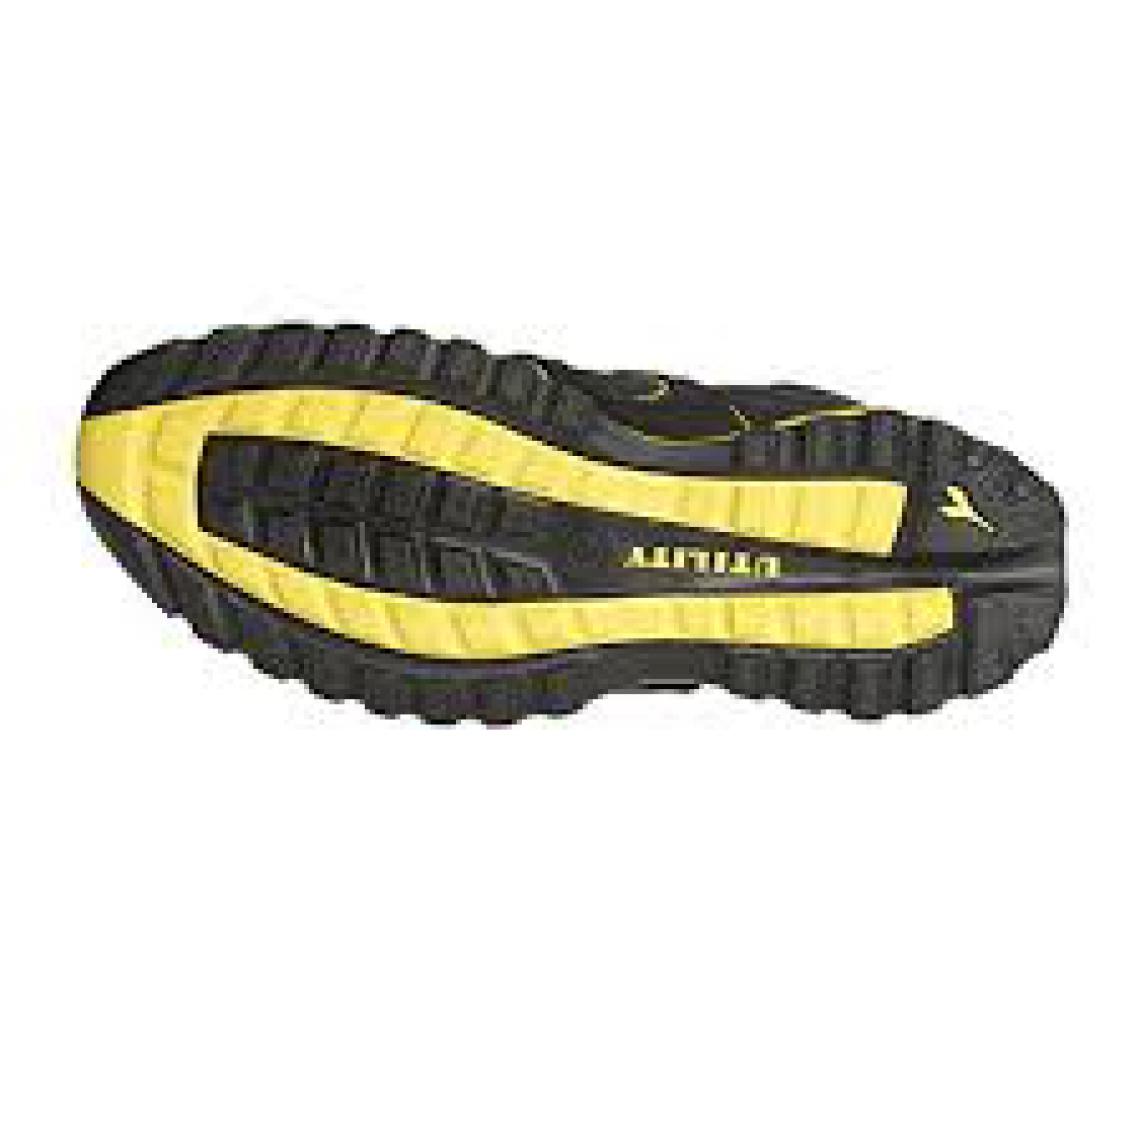 Diadora - Chaussure de sécurité DIADORA Glove II Haute - Résistantes à l'eau - Taille 48 - 170234-80013/48 - Equipement de Protection Individuelle